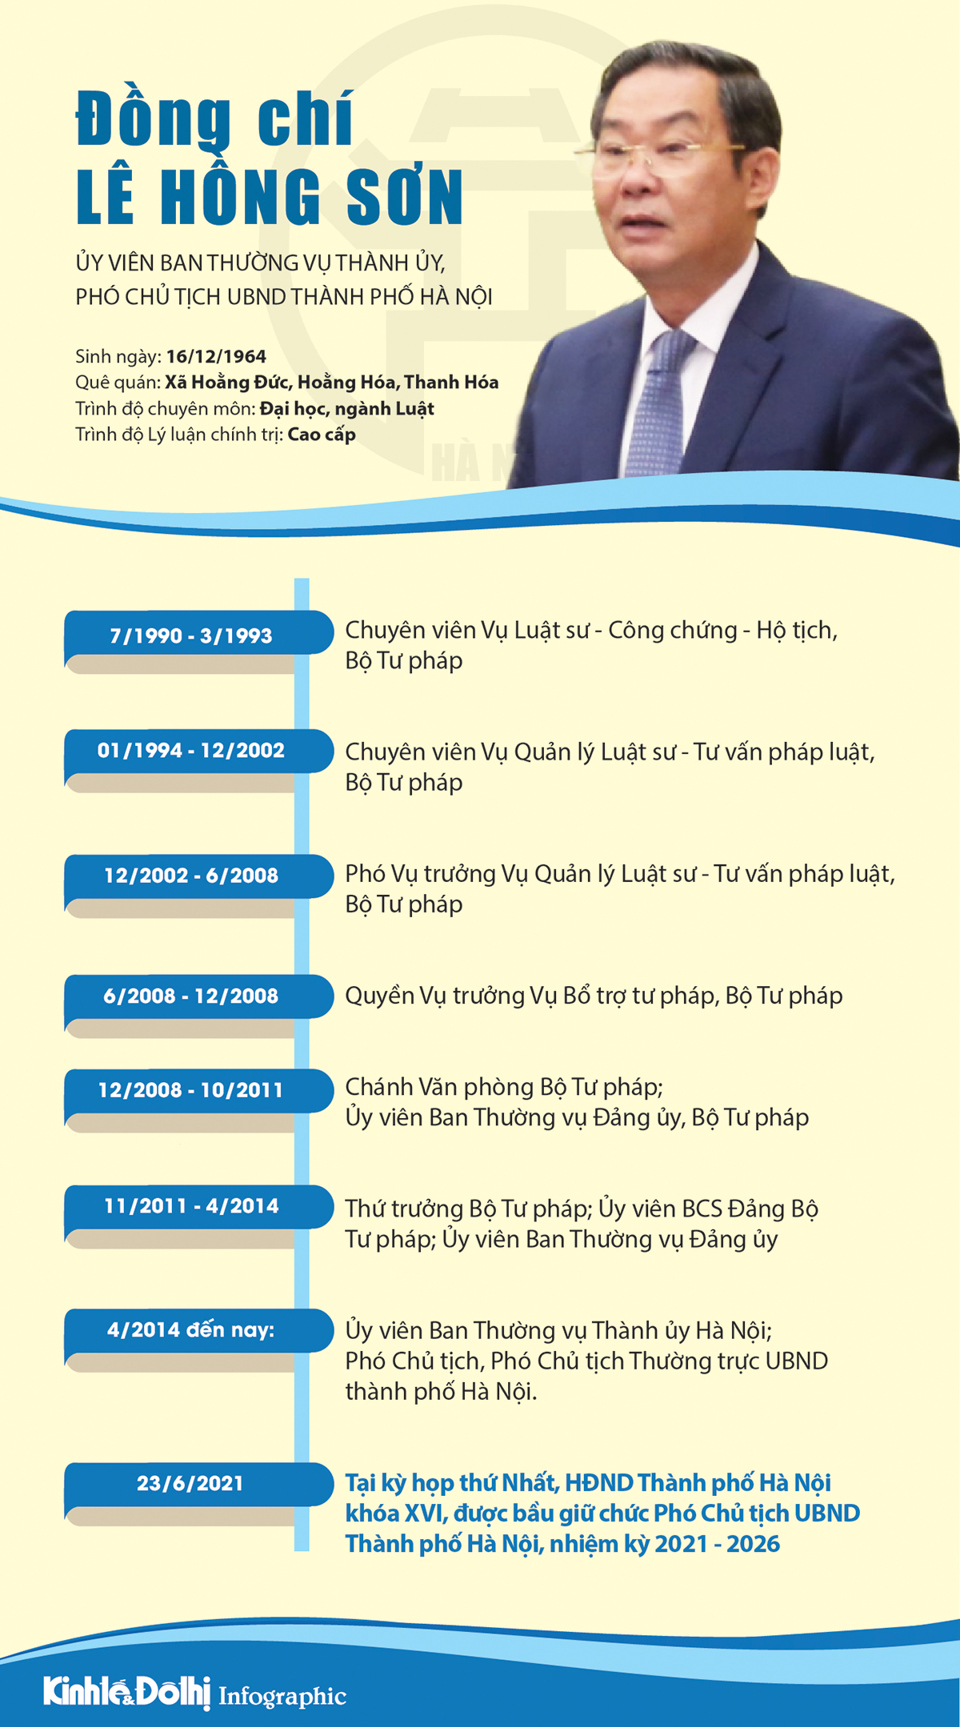 [Infographic] Chân dung Phó Chủ tịch UBND TP Hà Nội Lê Hồng Sơn - Ảnh 1